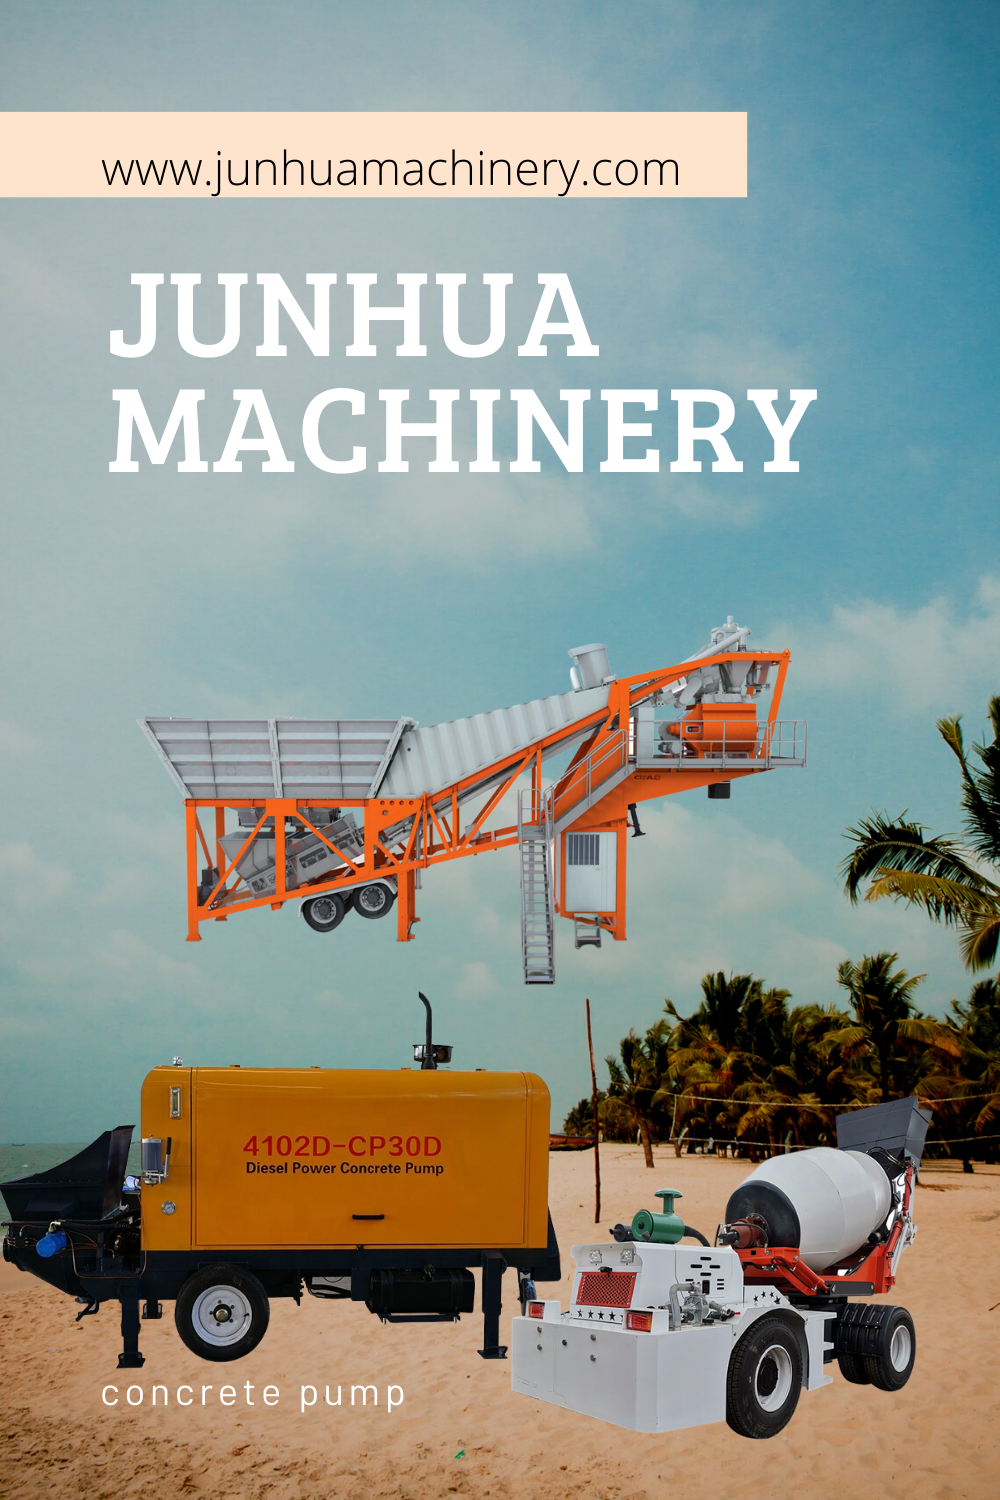 junhua machinery